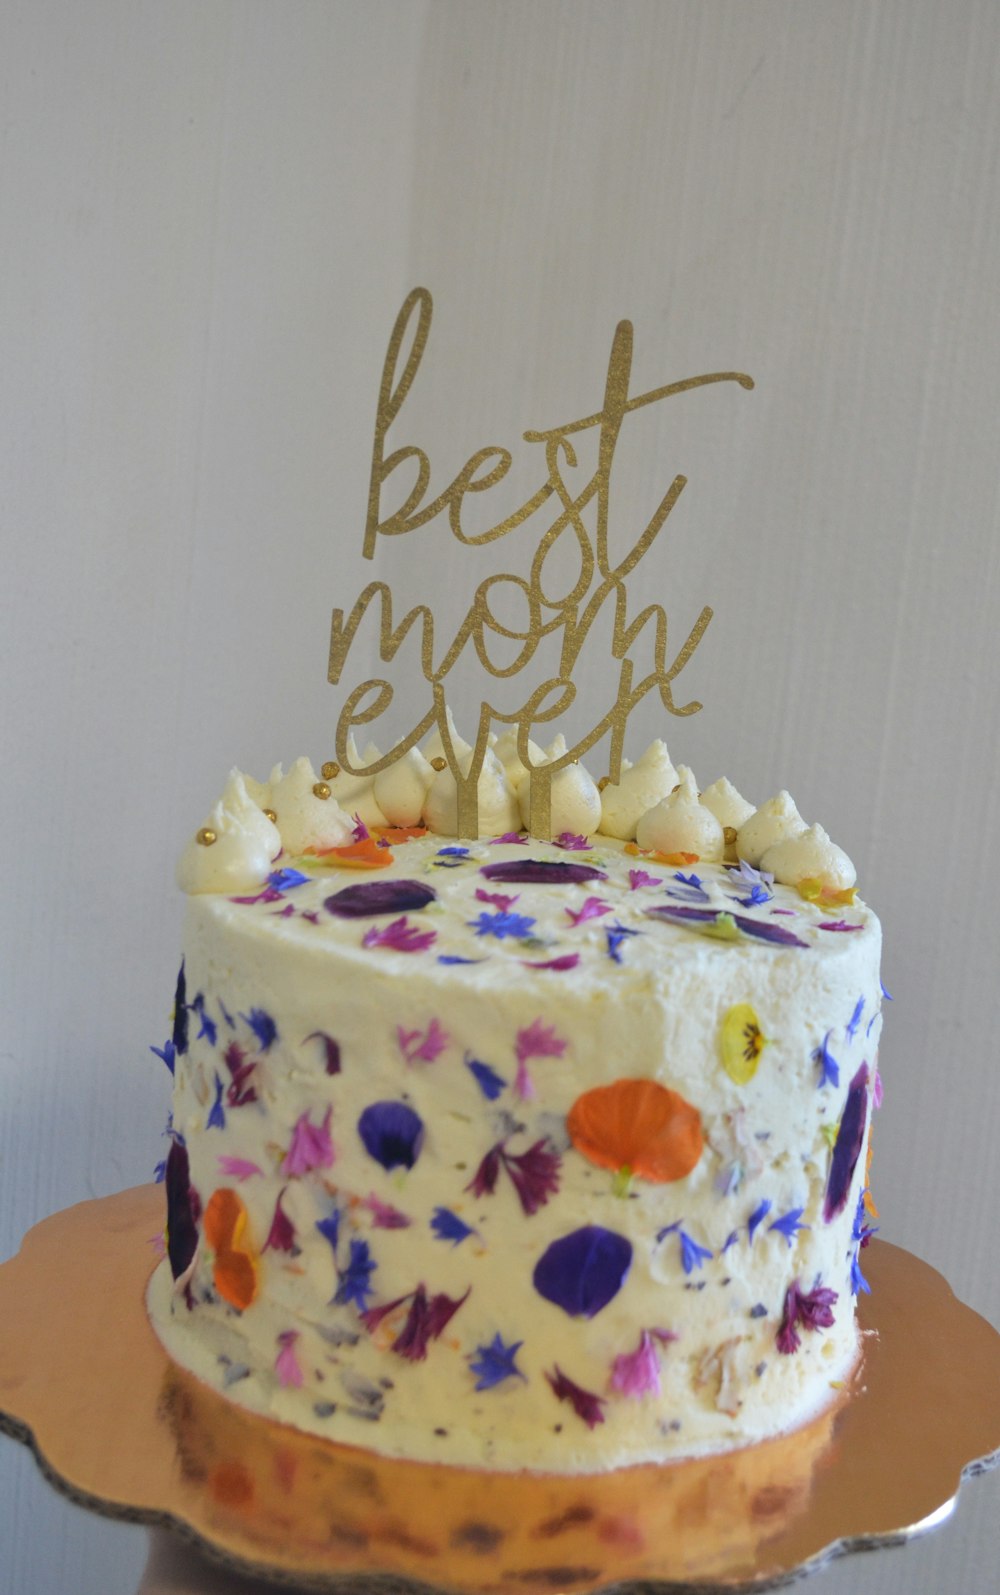 생일 축하 텍스트가 있는 흰색과 노란색 케이크